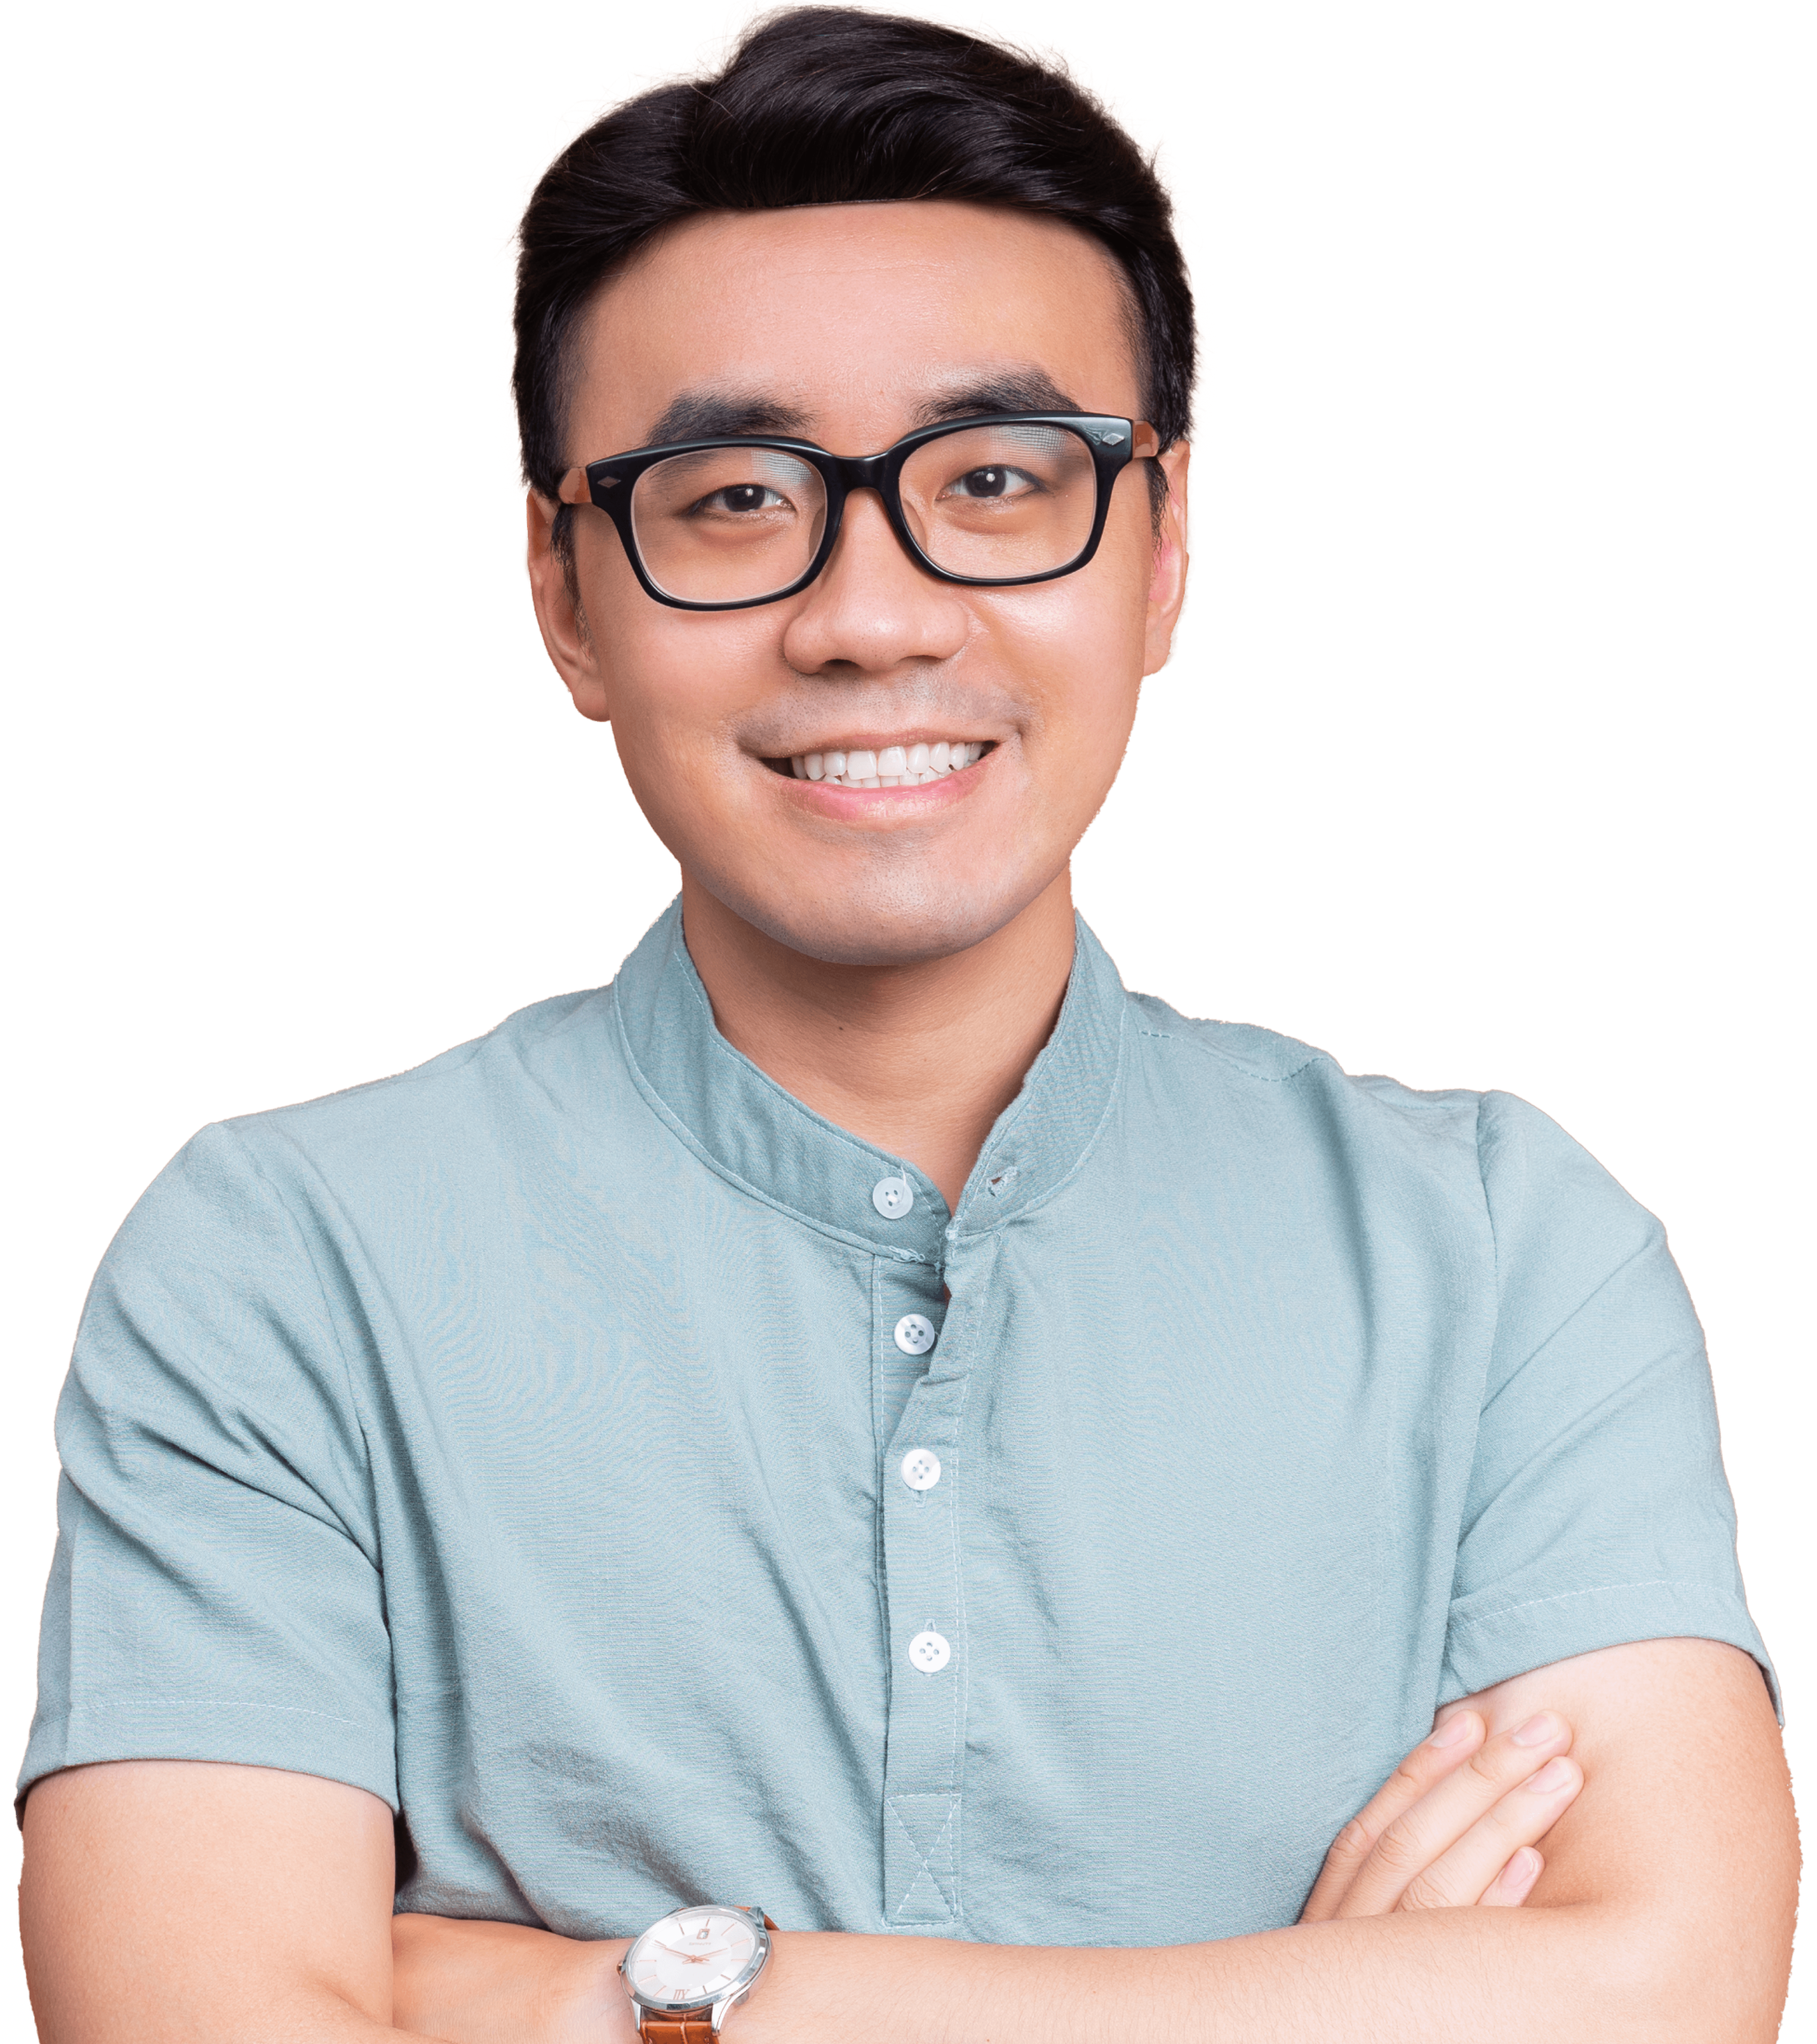 Asiatischer Mann mit Brille, Hemd, schaut glücklich 